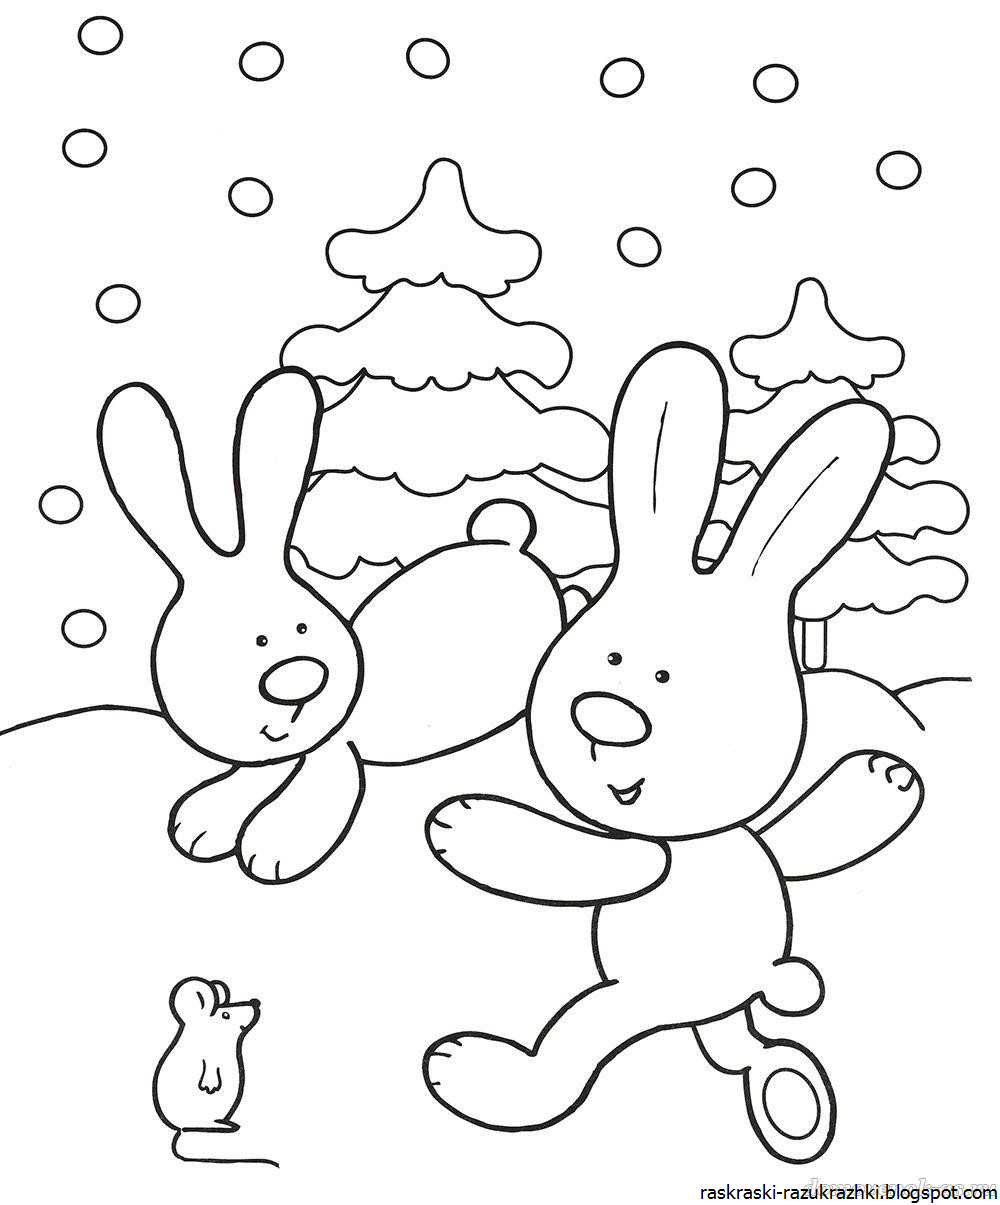 Смотри! раскраски на новый год 2019 свиньи для детей бесплатно рисунки